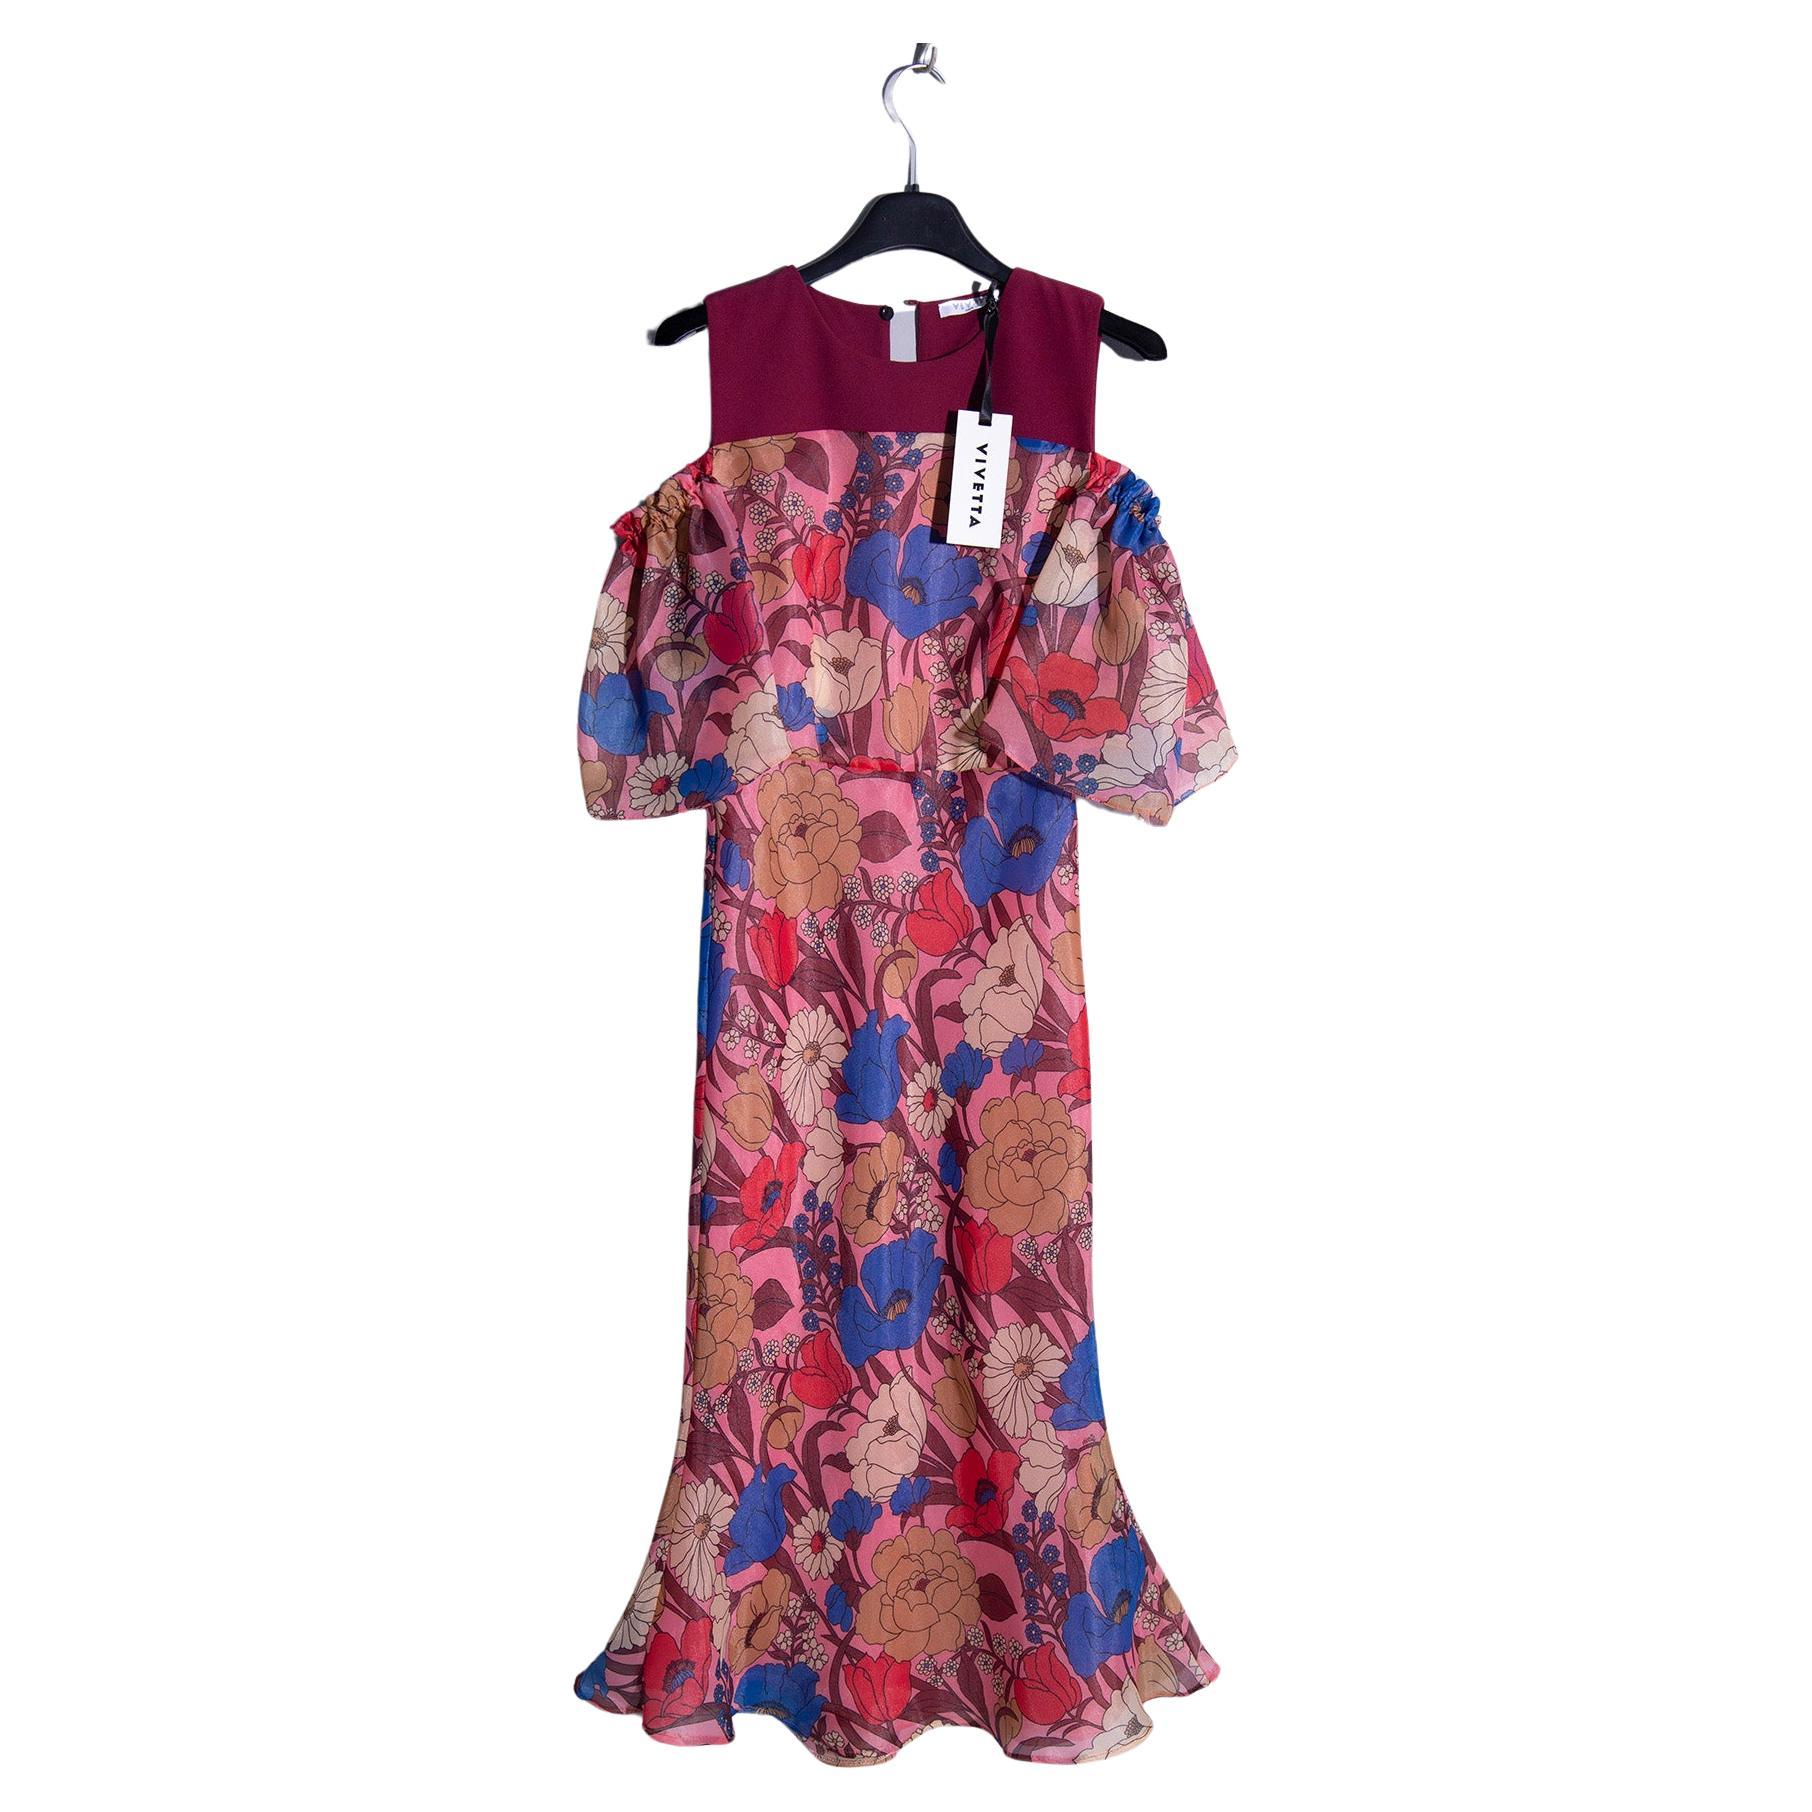 Vivetta elegant floral pattern cocktail dress For Sale